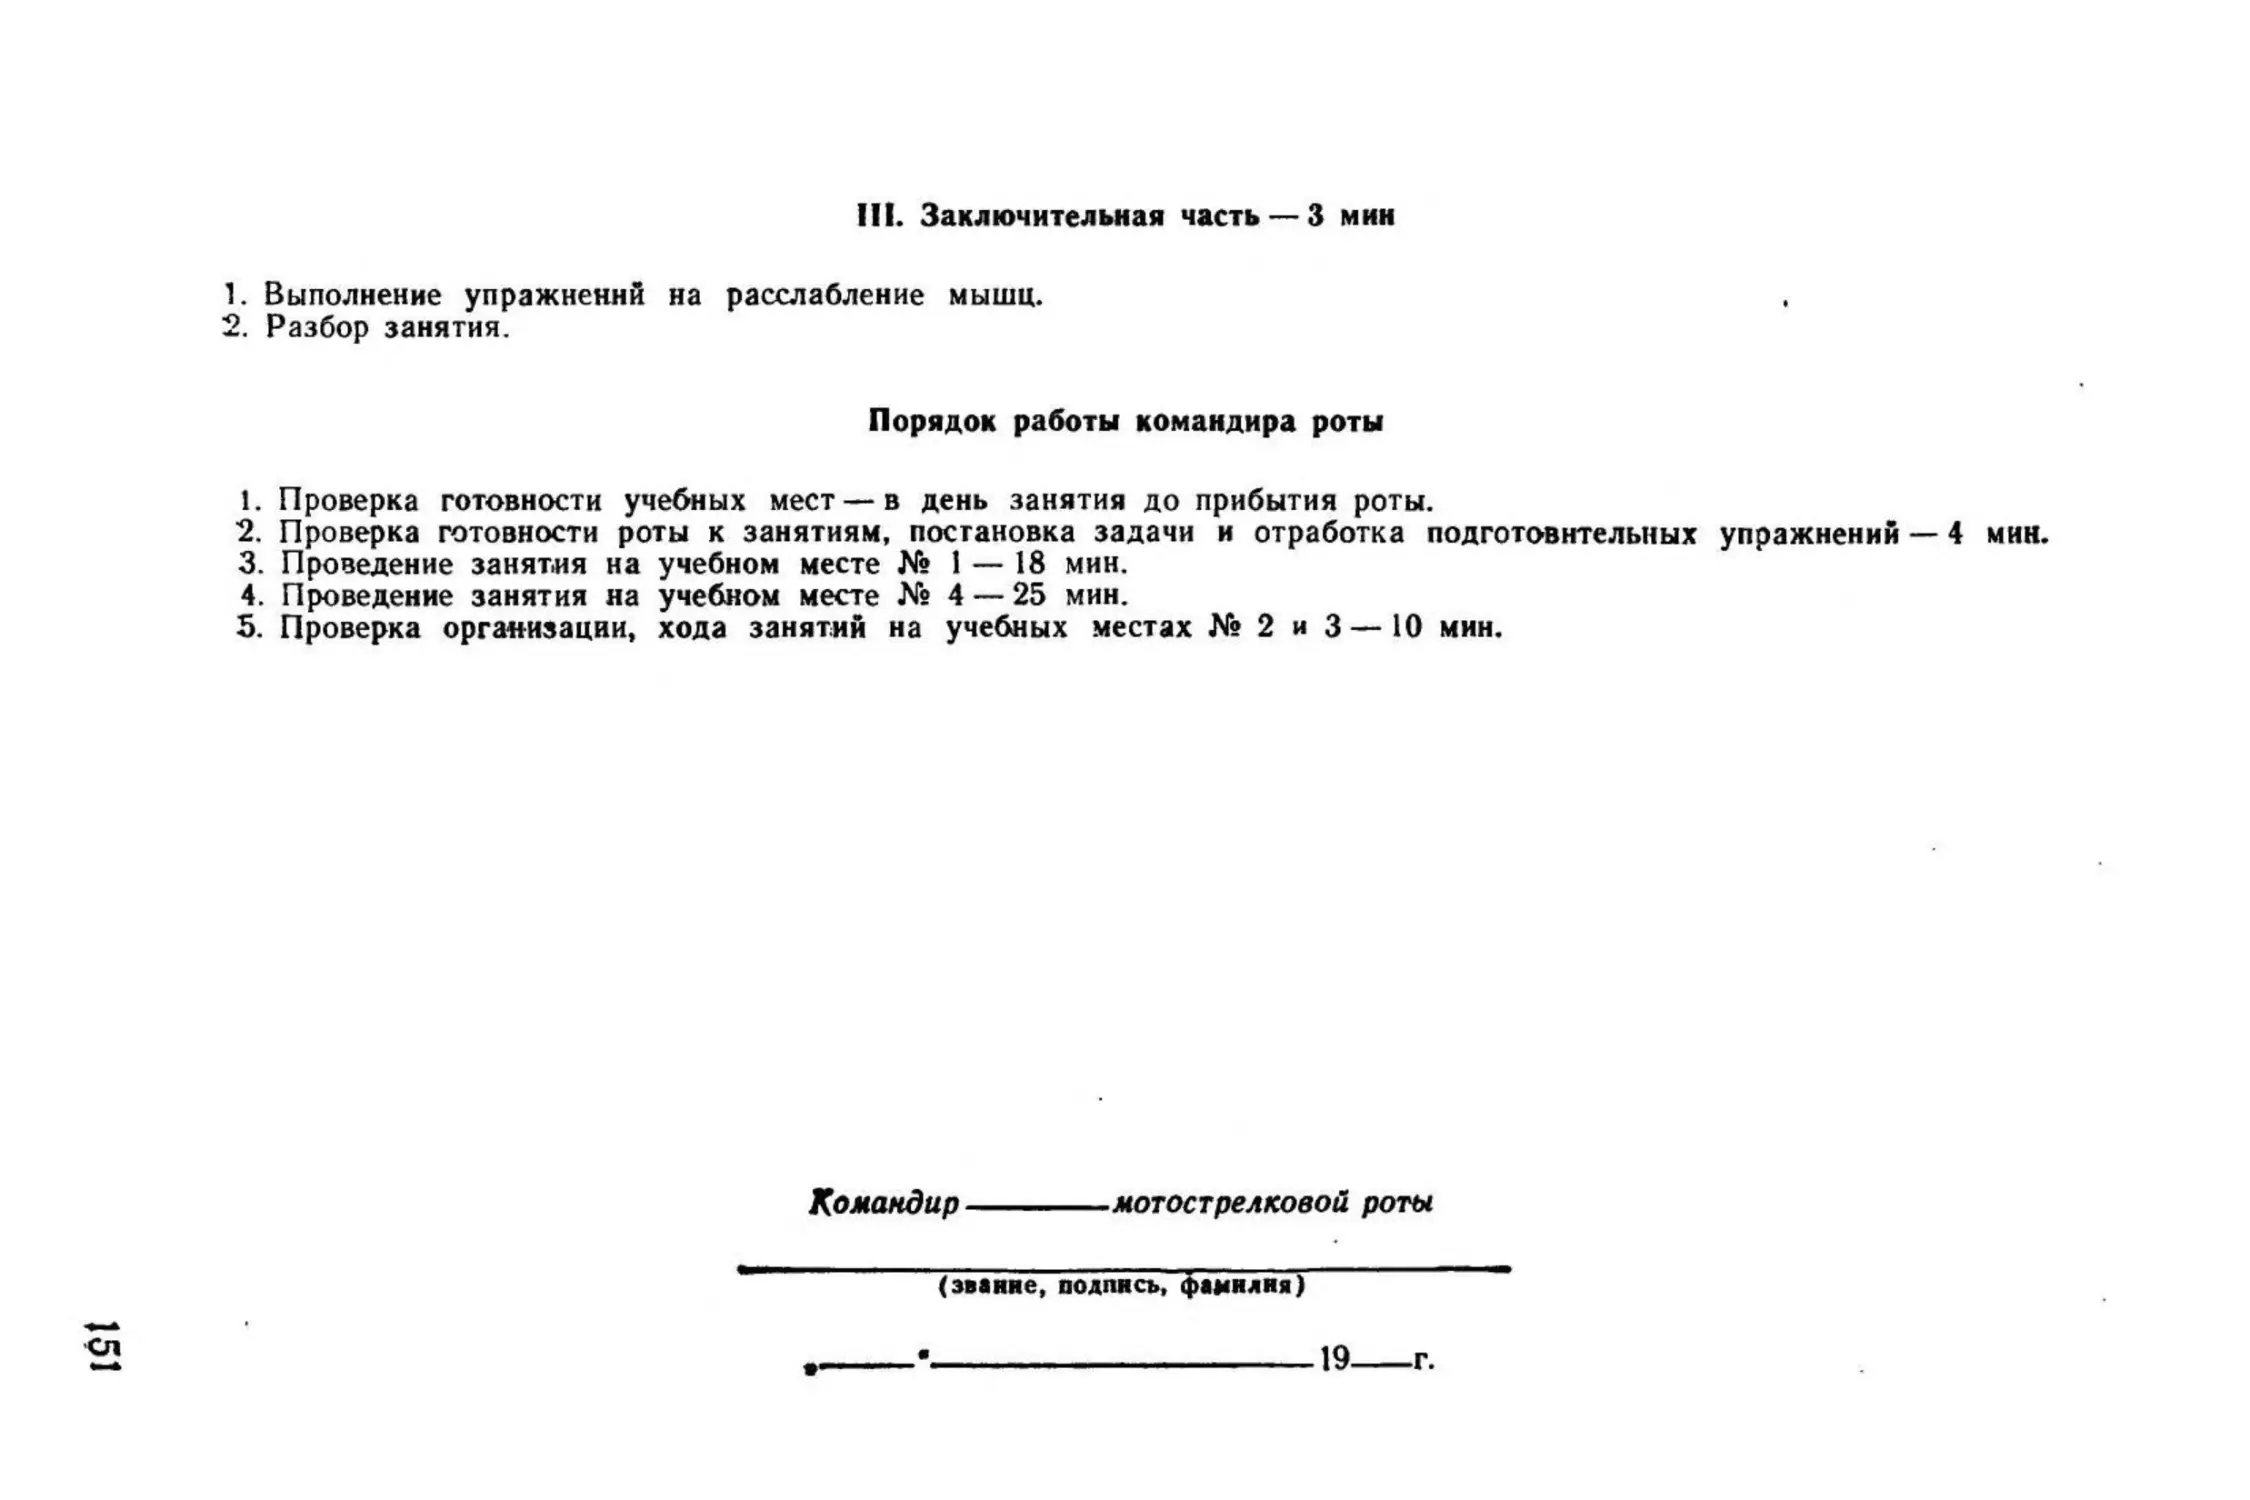 Методическое пособие Обучение мотострелковых подразделений боевым действиям в горах (1979)_152